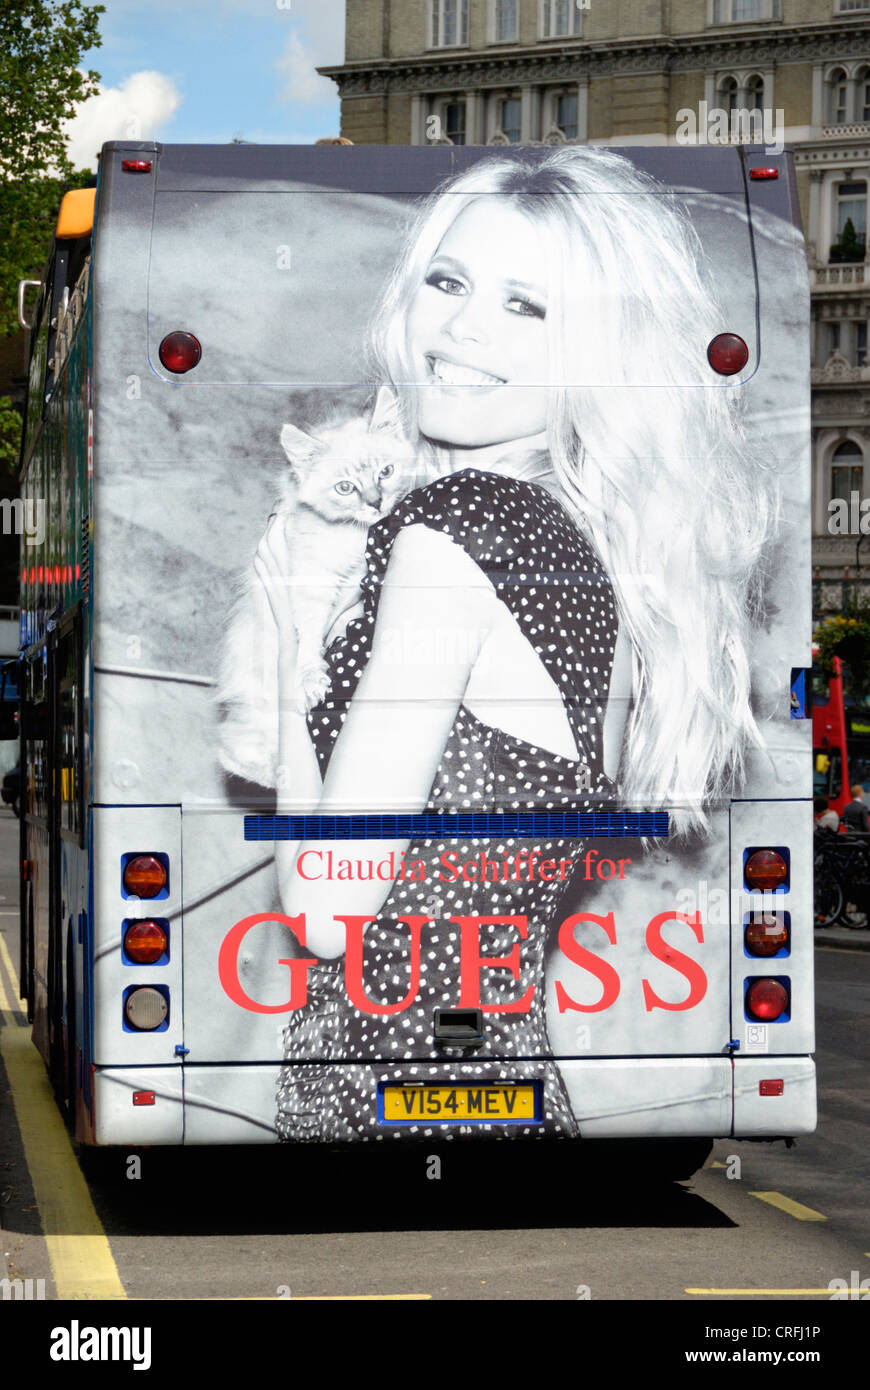 Claudia Schiffer Anzeige Fur Guess Mode Auf Der Ruckseite Von Einem Londoner Bus Stockfotografie Alamy